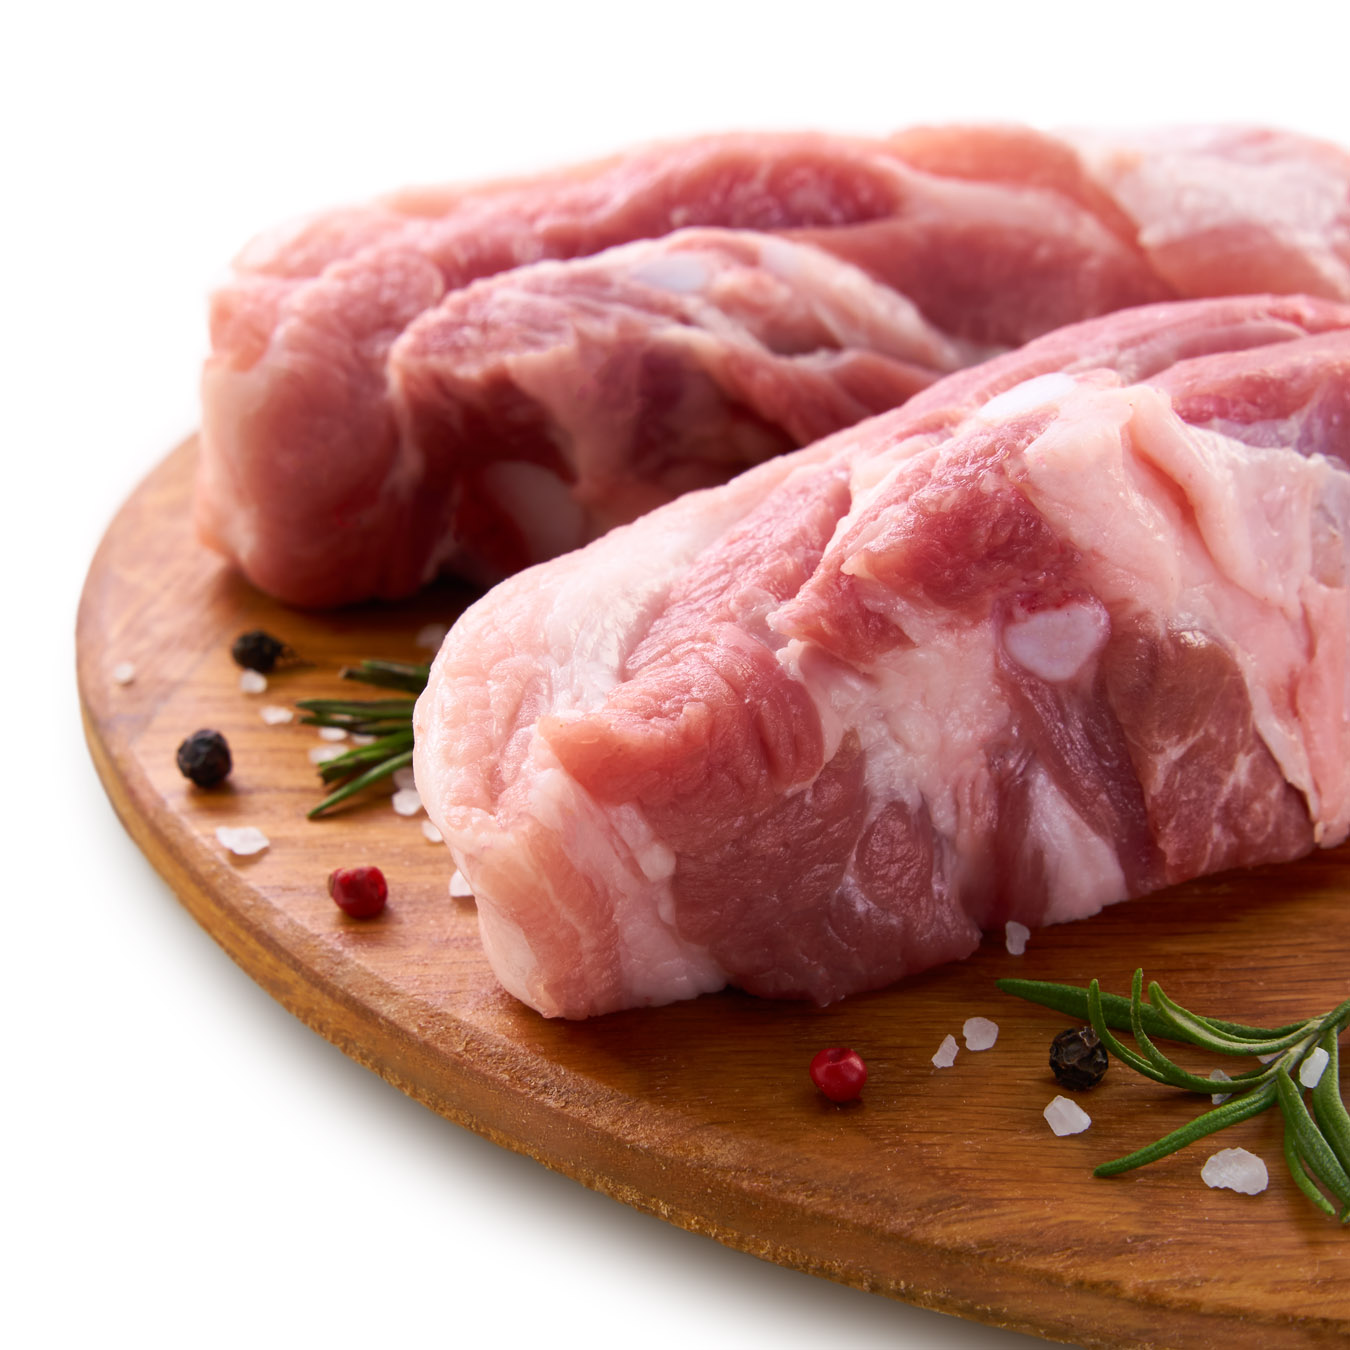 Pork steak with brisket chilled without bone